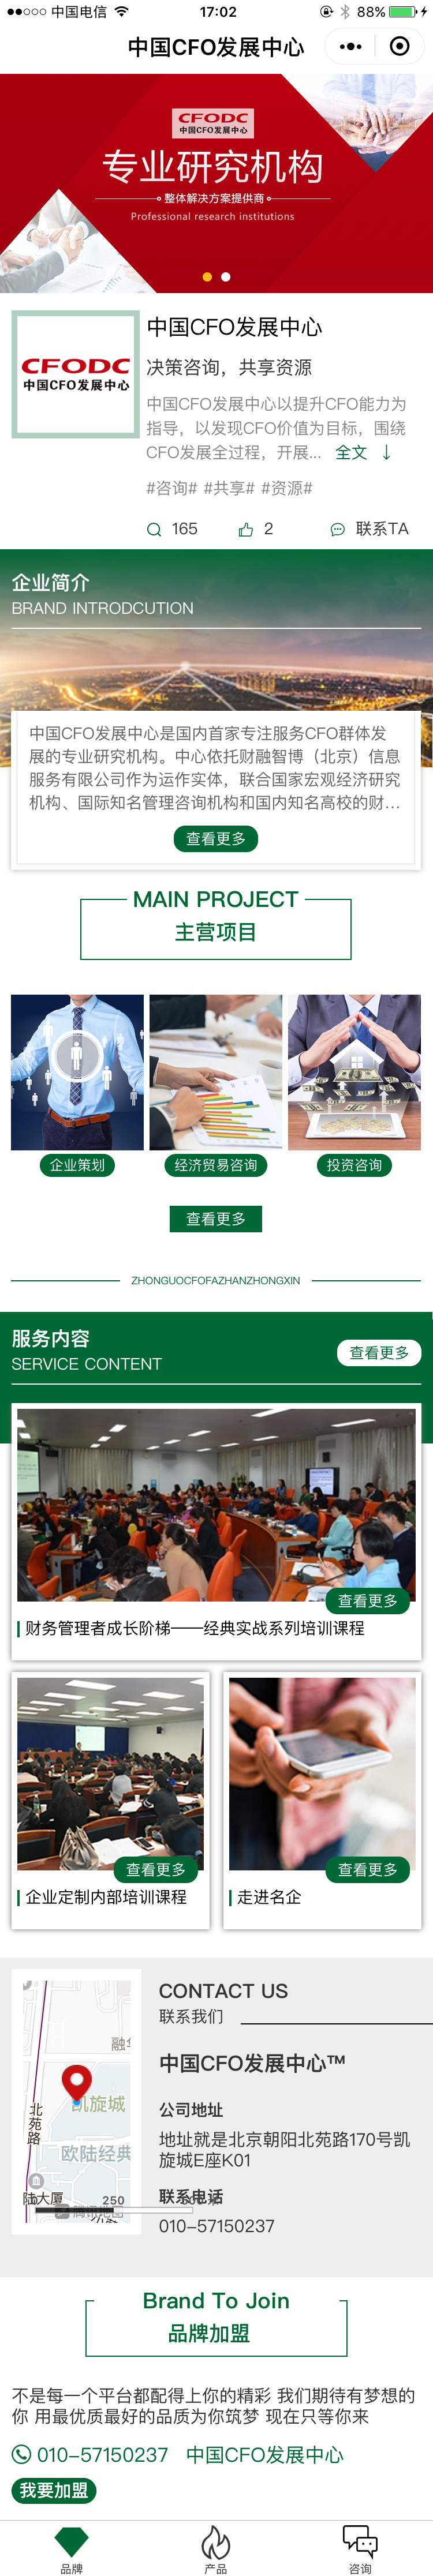 咨询绿色北京-华]CFO 发展中心商标小程序高级版.png